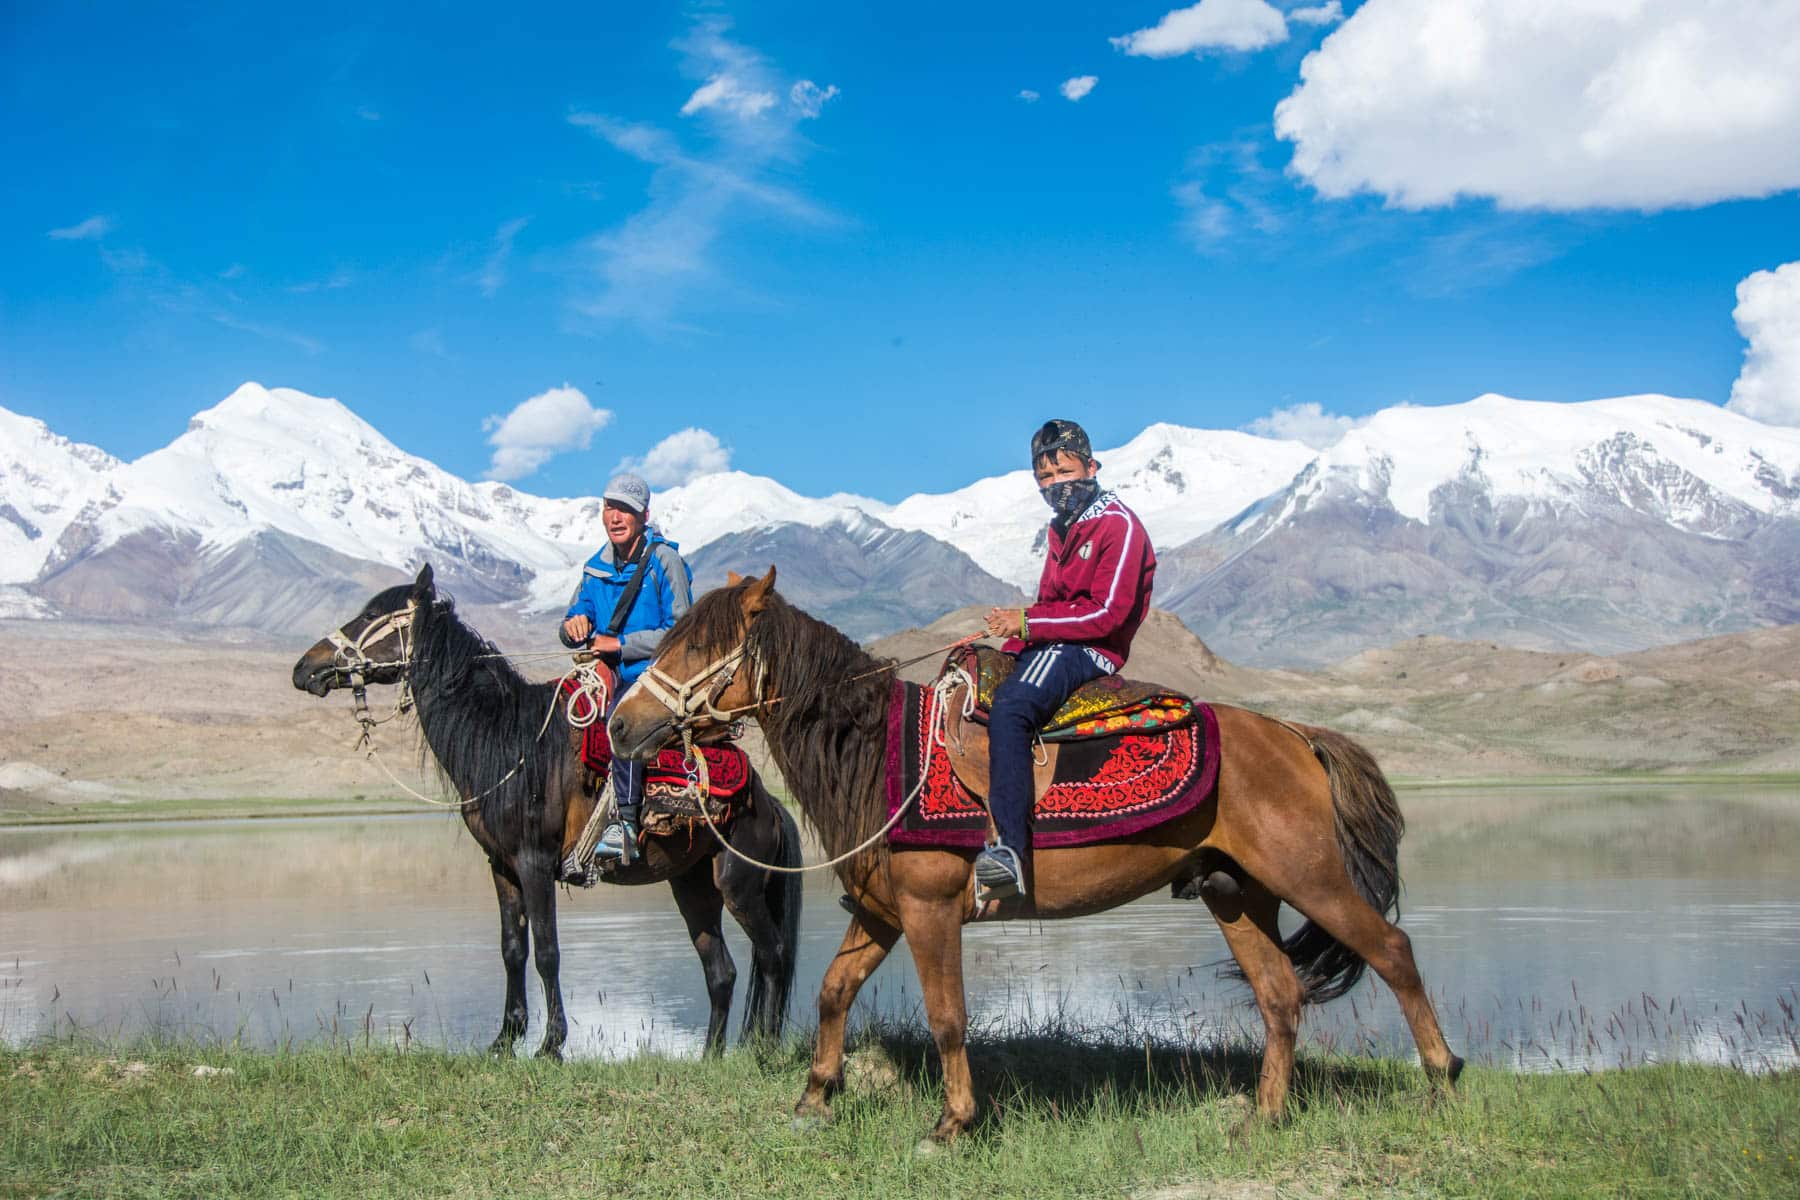 Local Uighur boys on horses at Karakul Lake in Xinjiang, China